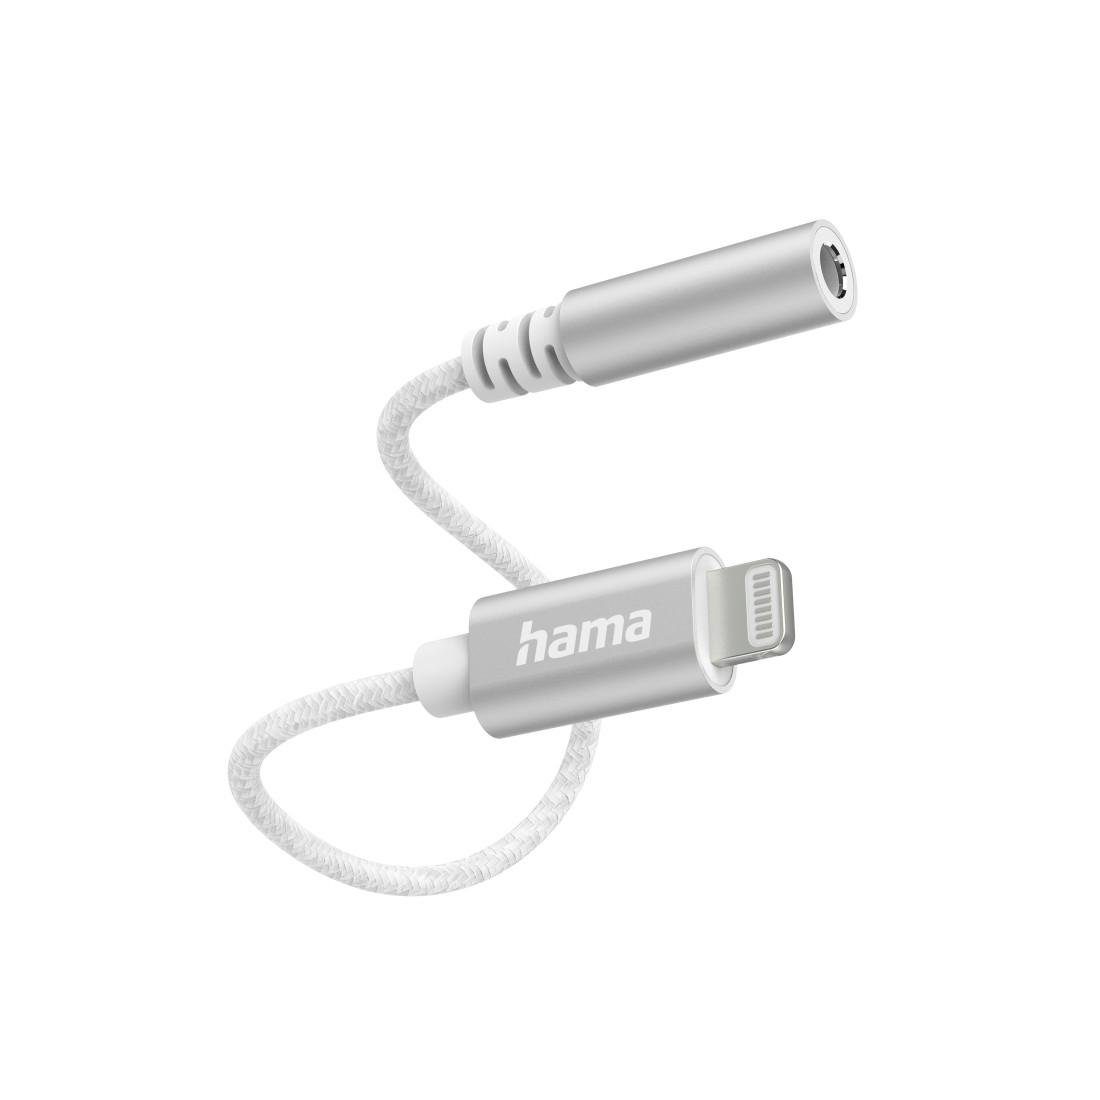 Hama HDMI Adapter online kaufen | OTTO